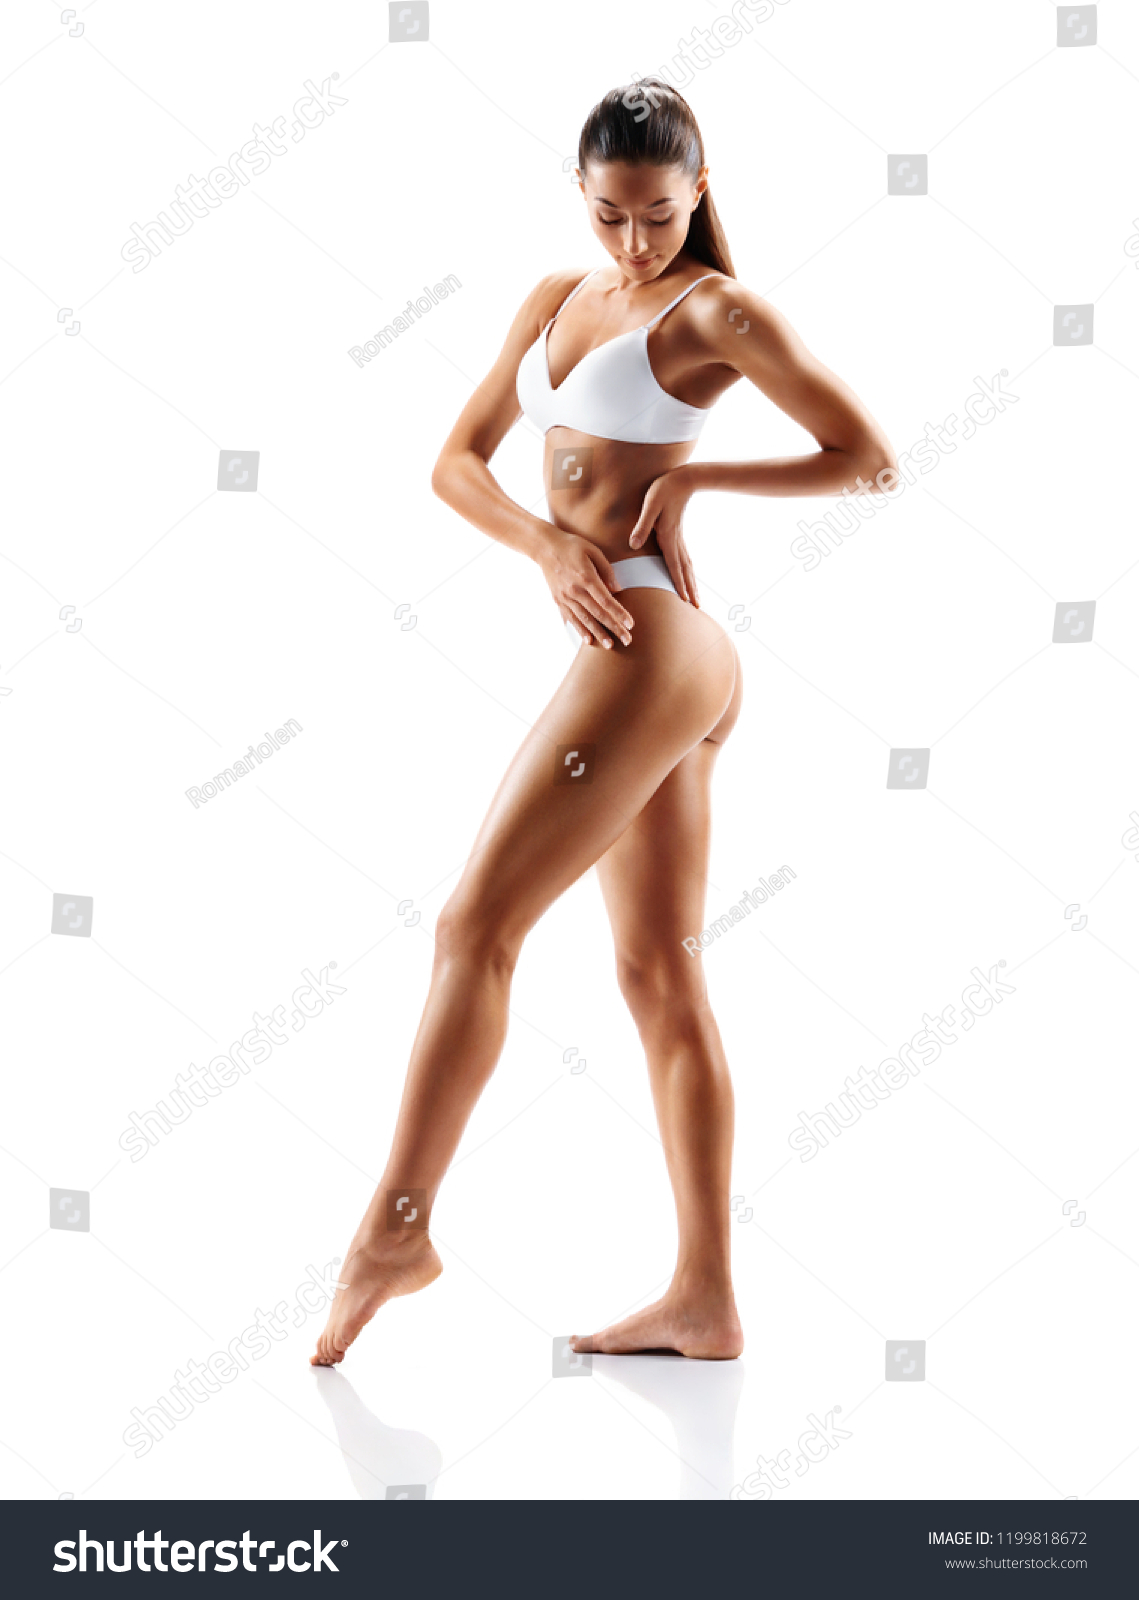 фото женского тела в полный рост